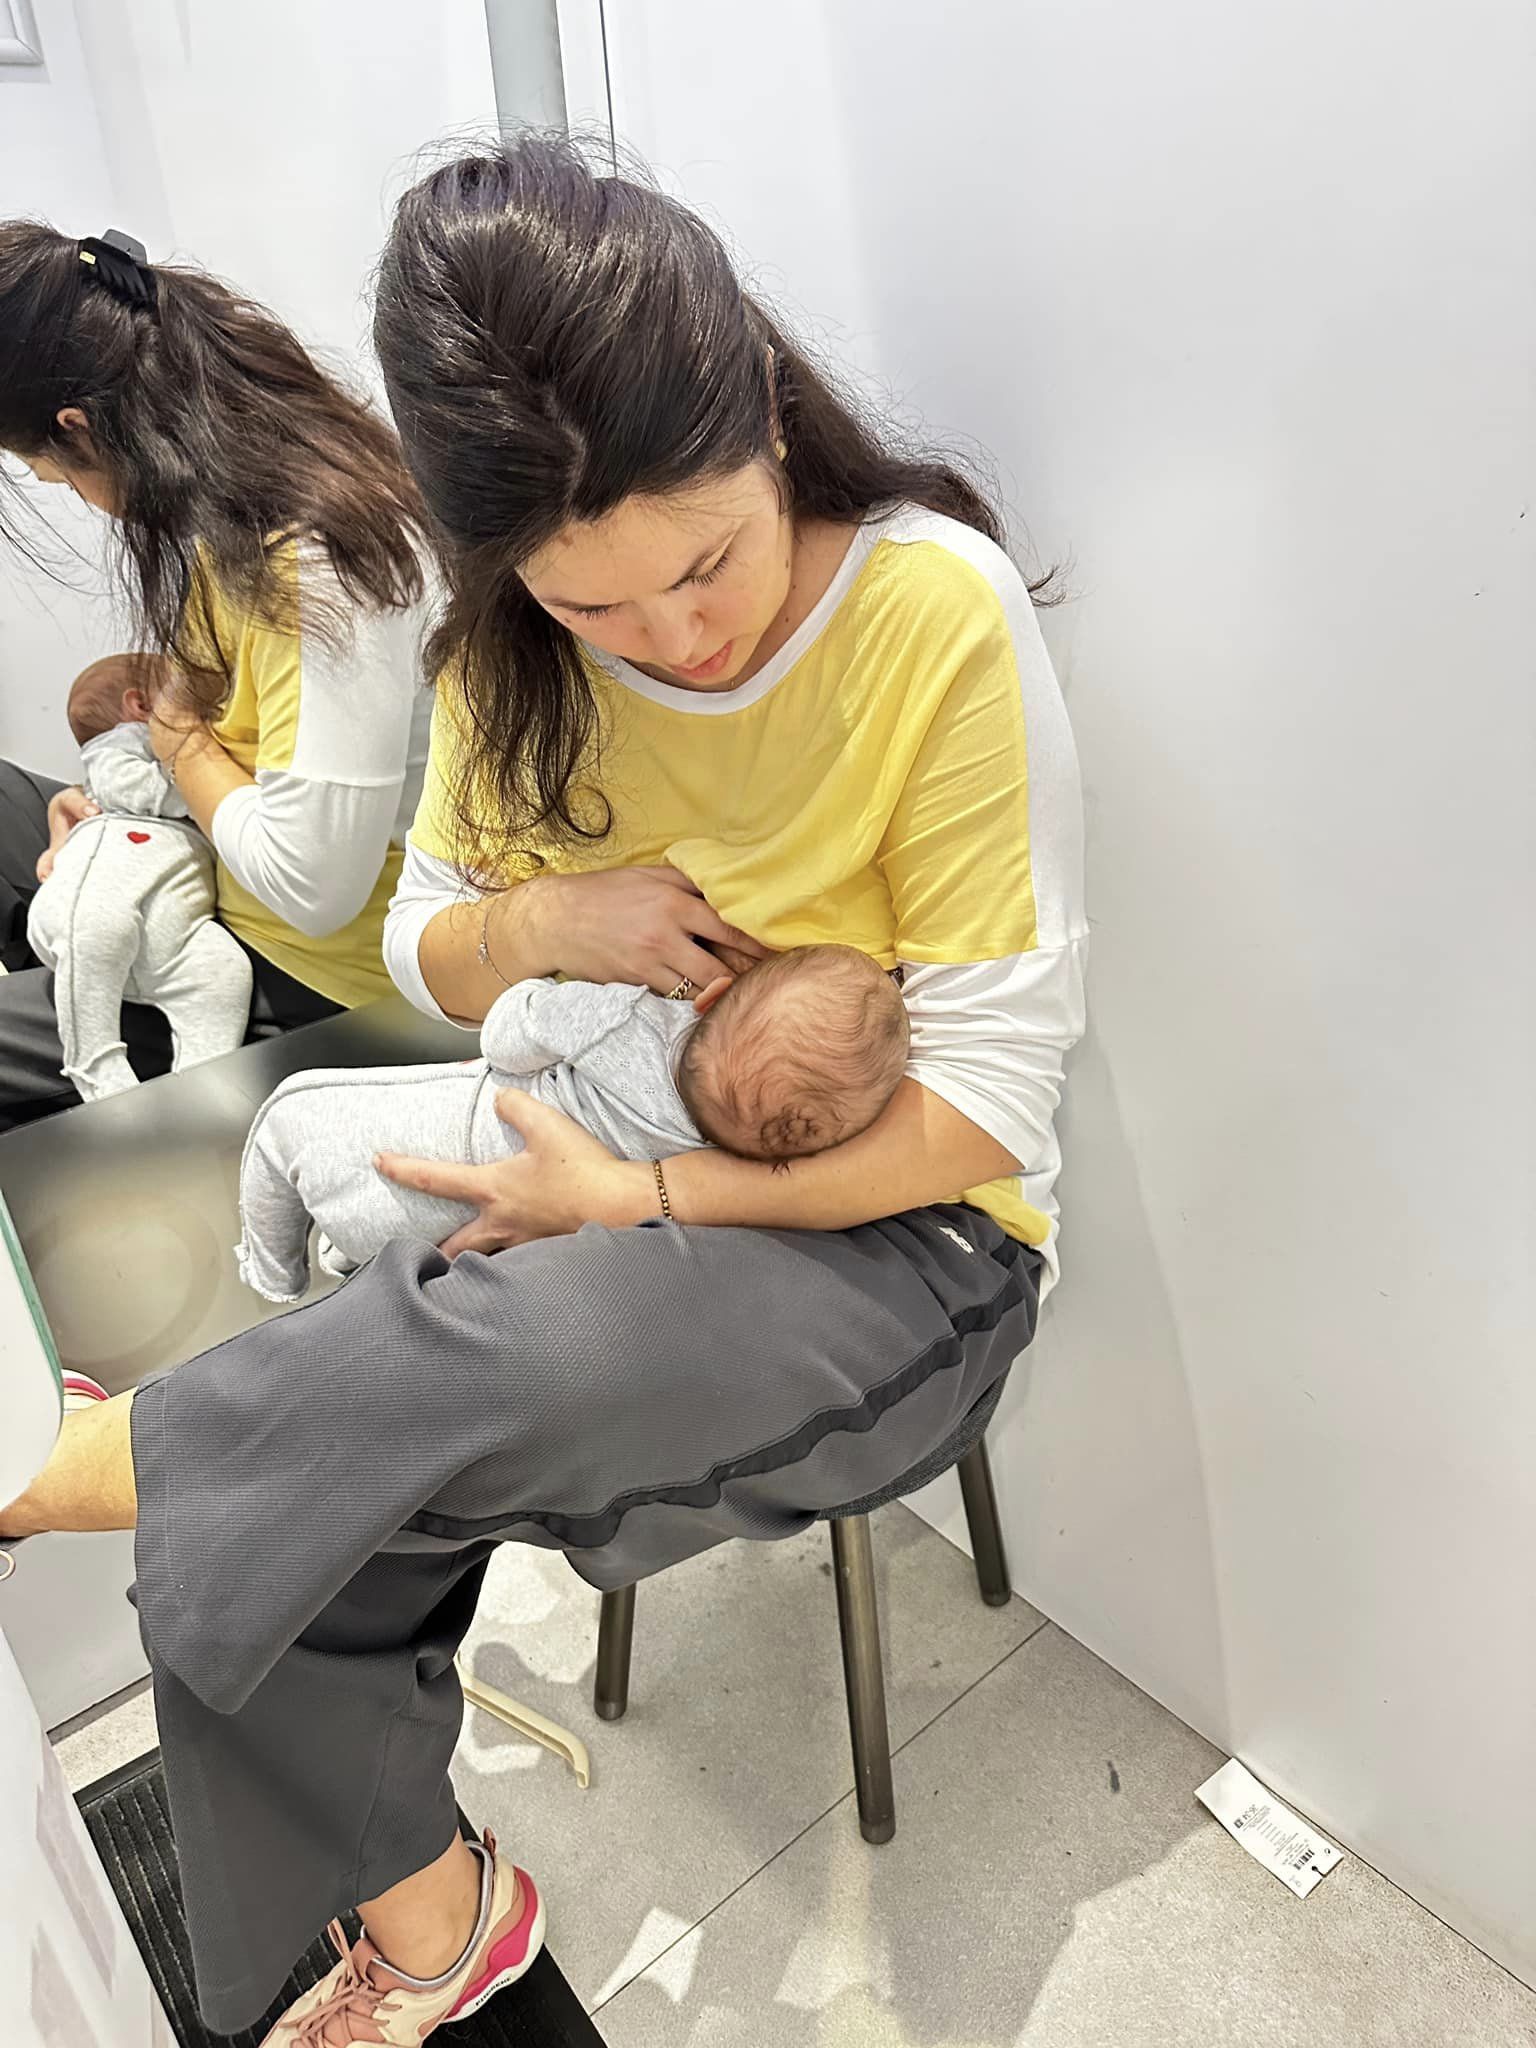 Женщина кормила ребенка в магазине одежды/Фото: Ирина Черныш / © 